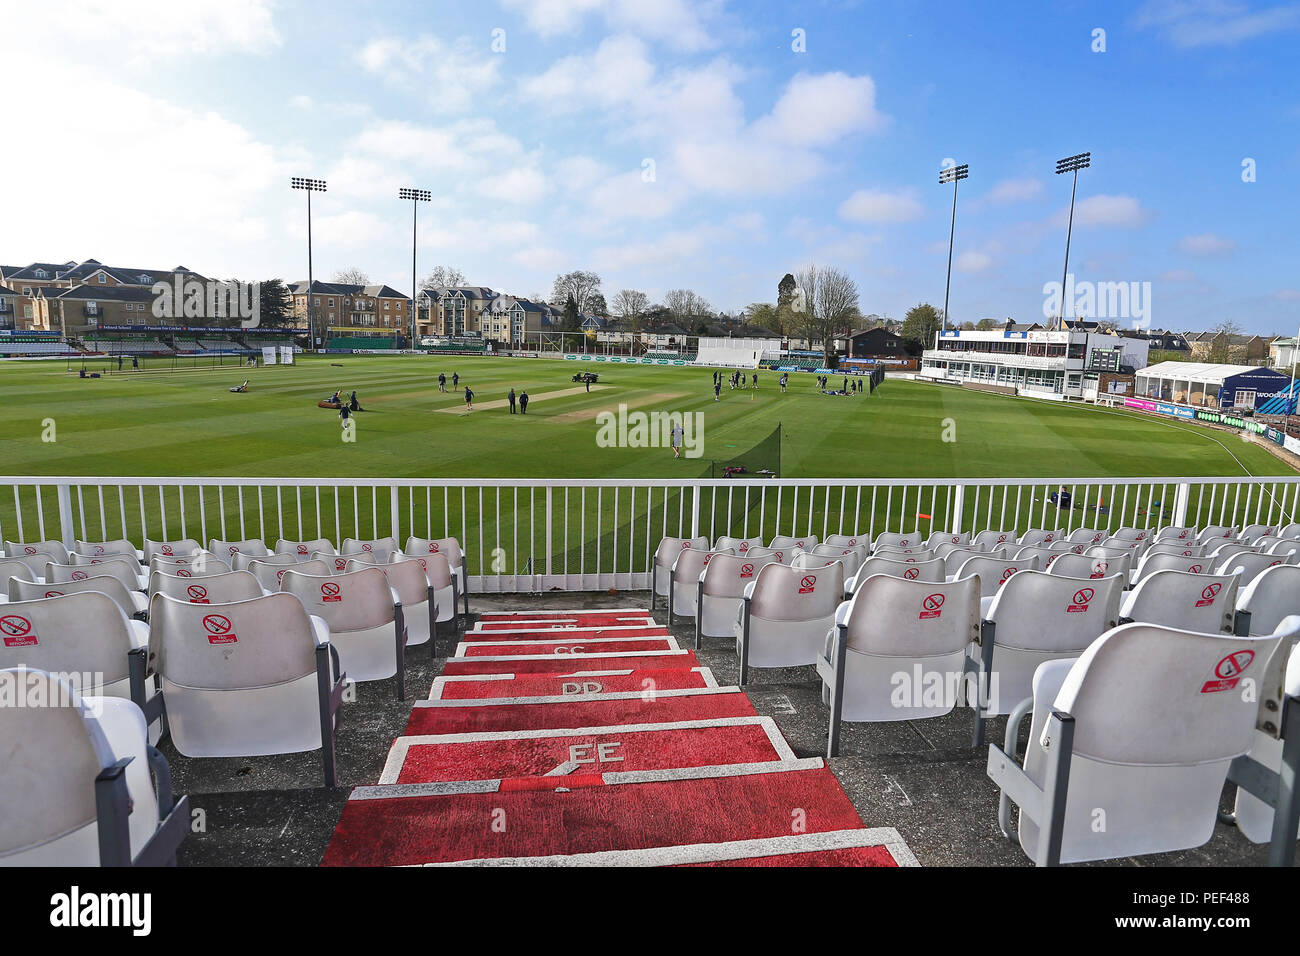 Vista generale del terreno durante la Essex CCC vs Durham MCCU, inglese MCC Università Match Cricket al Cloudfm County Ground il 2 aprile 2017 Foto Stock